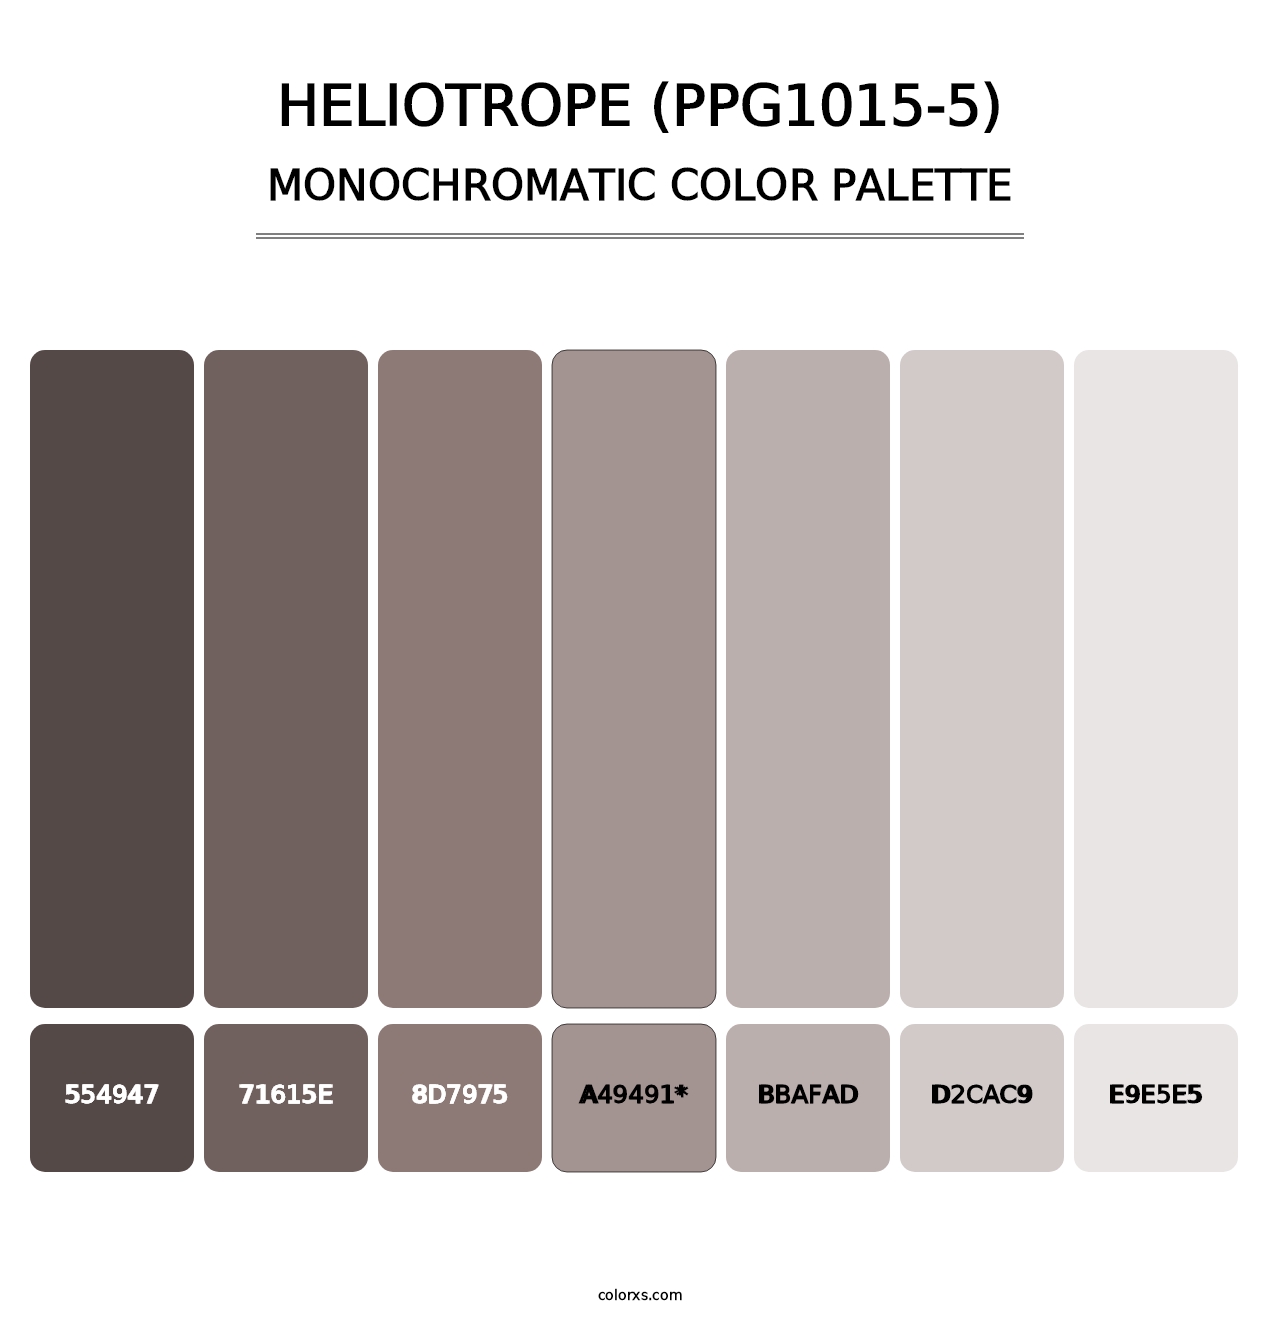 Heliotrope (PPG1015-5) - Monochromatic Color Palette